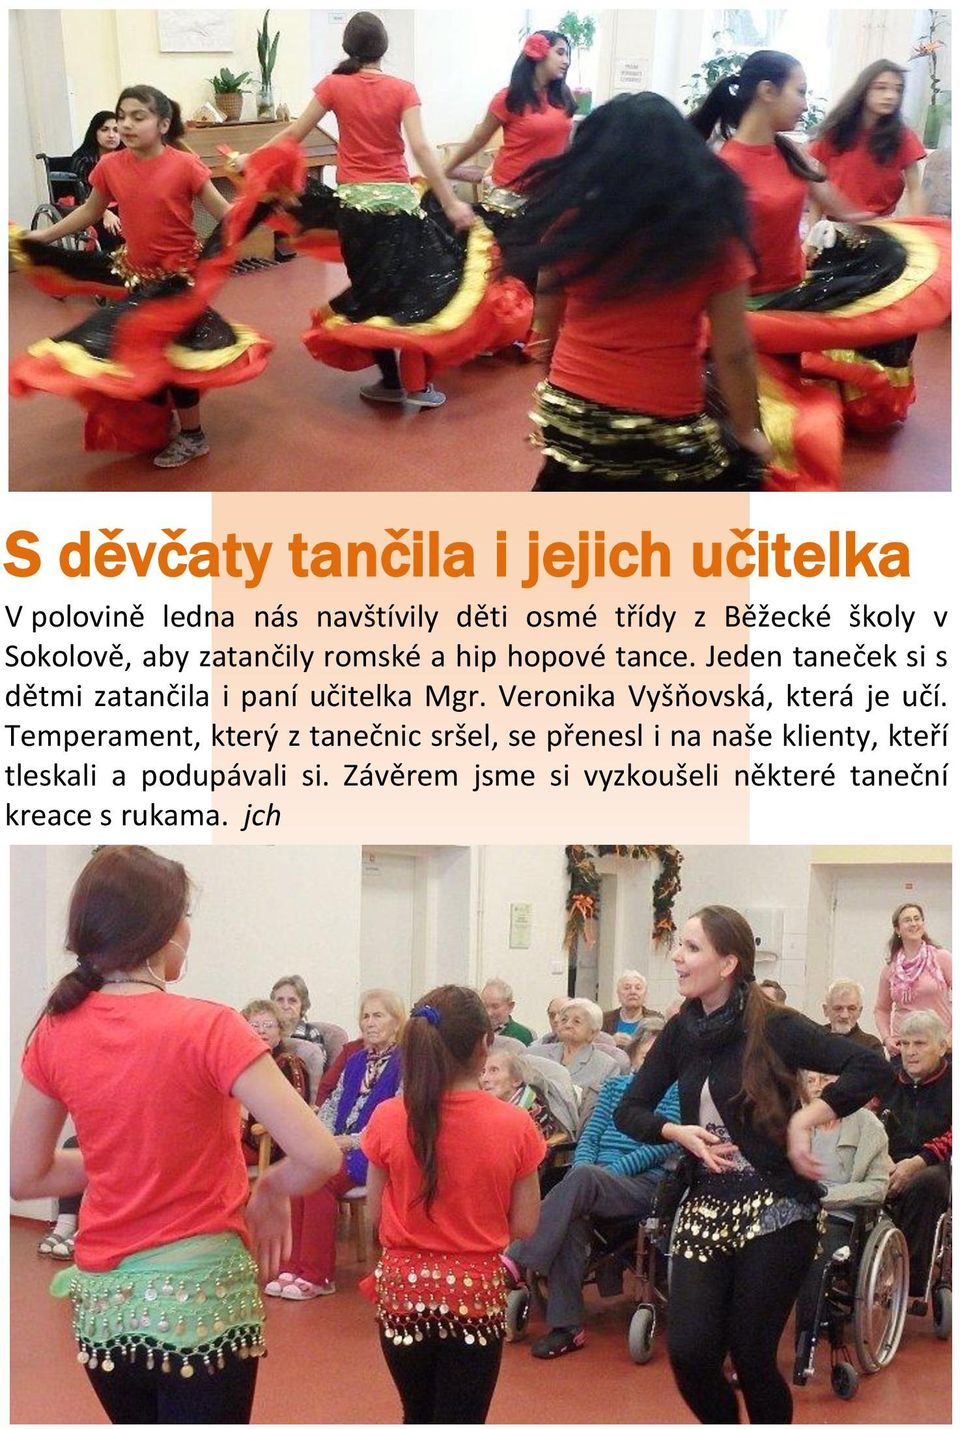 Jeden taneček si s dětmi zatančila i paní učitelka Mgr. Veronika Vyšňovská, která je učí.